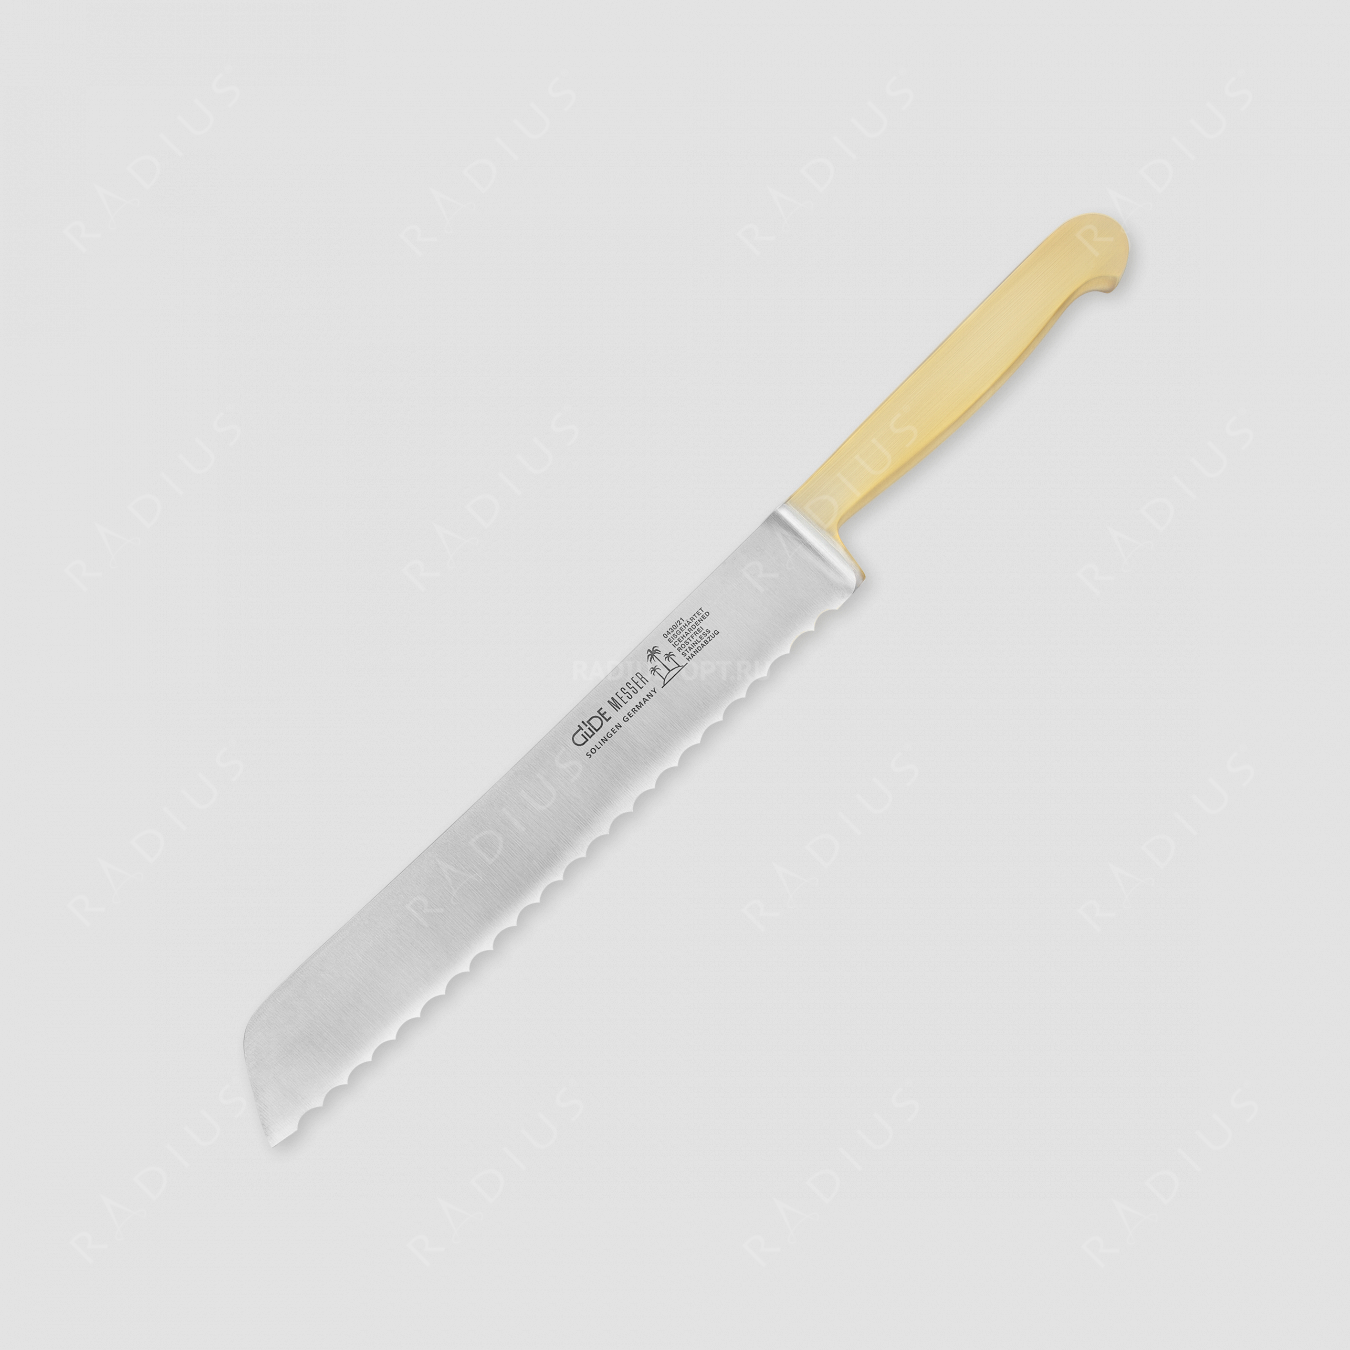 Нож для хлеба с позолоченной ручкой 21 см, серия Kappa gold, GUDE, Золинген, Германия